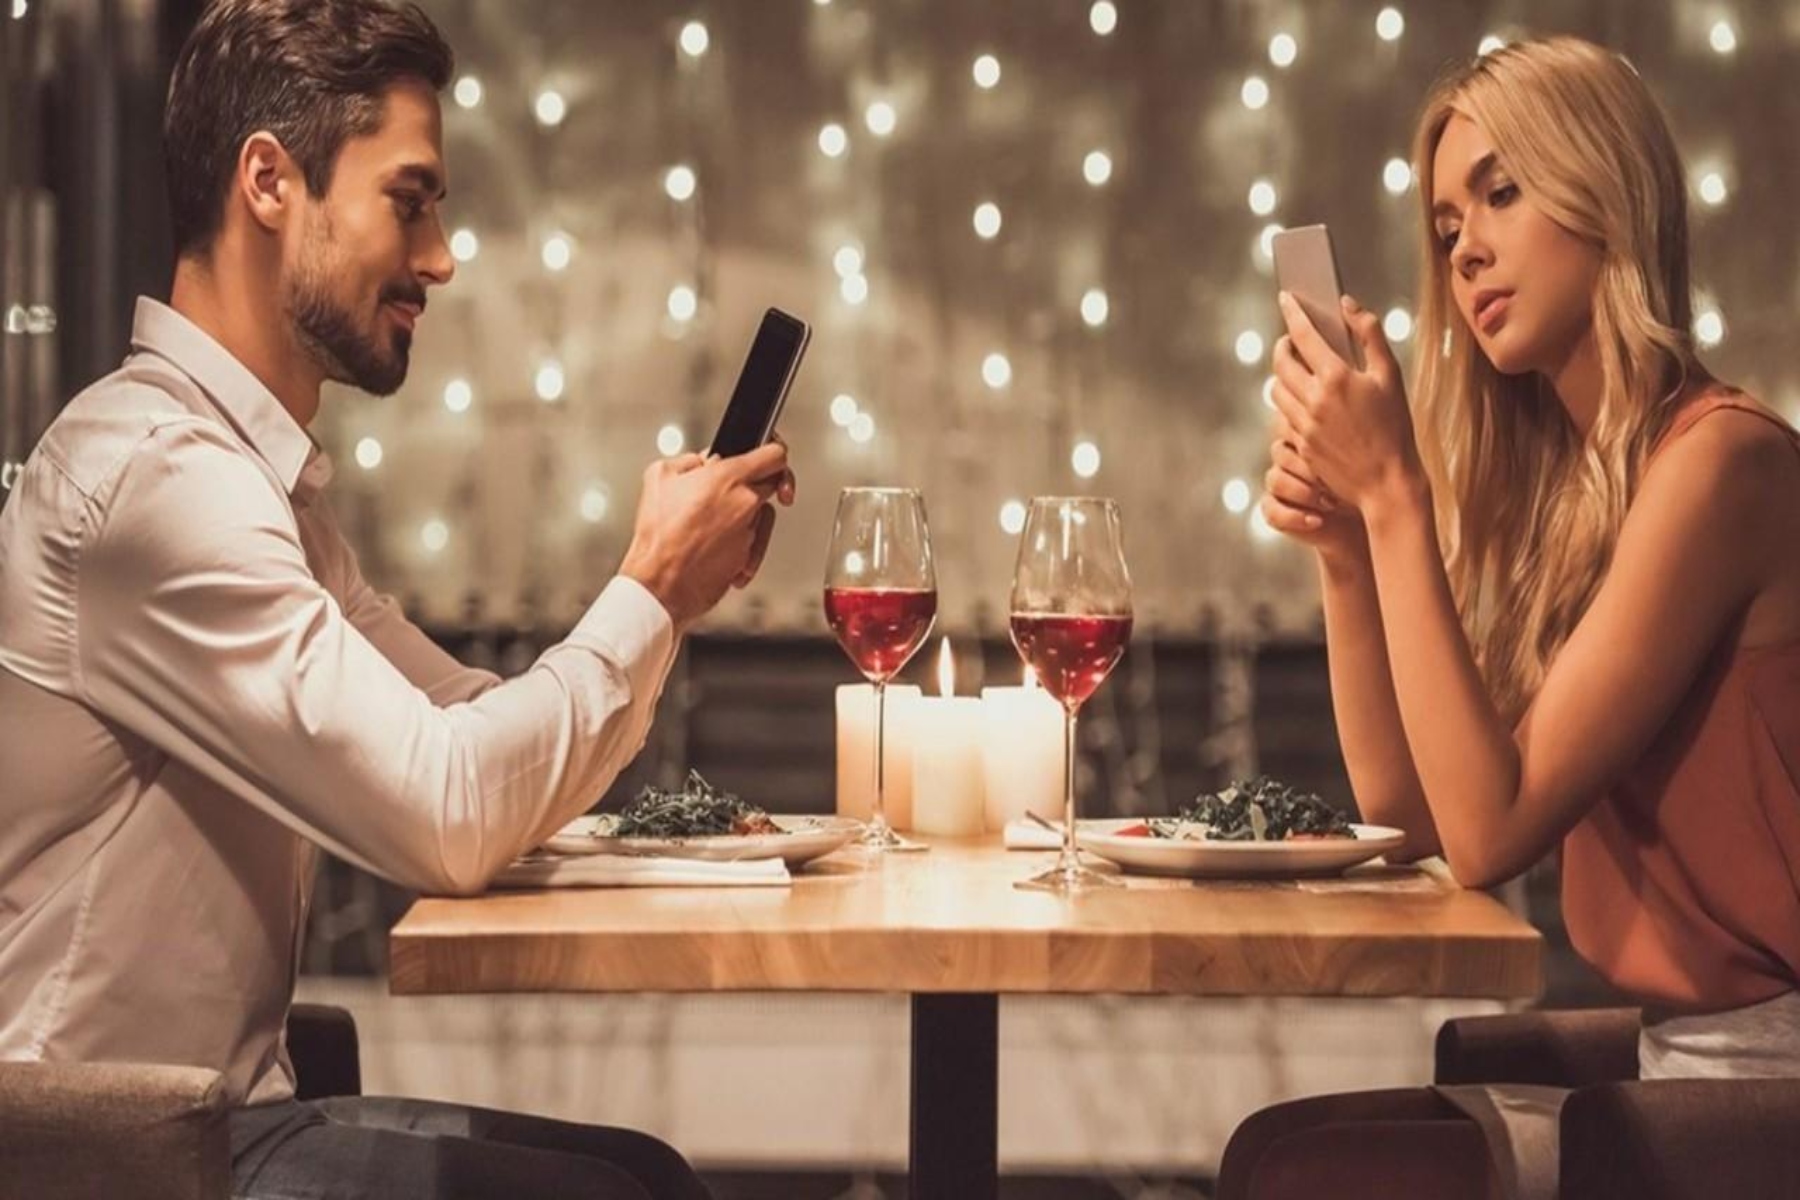 Dating apps: Σαμποτάρετε μόνοι σας την στρατηγική των ραντεβού σας;